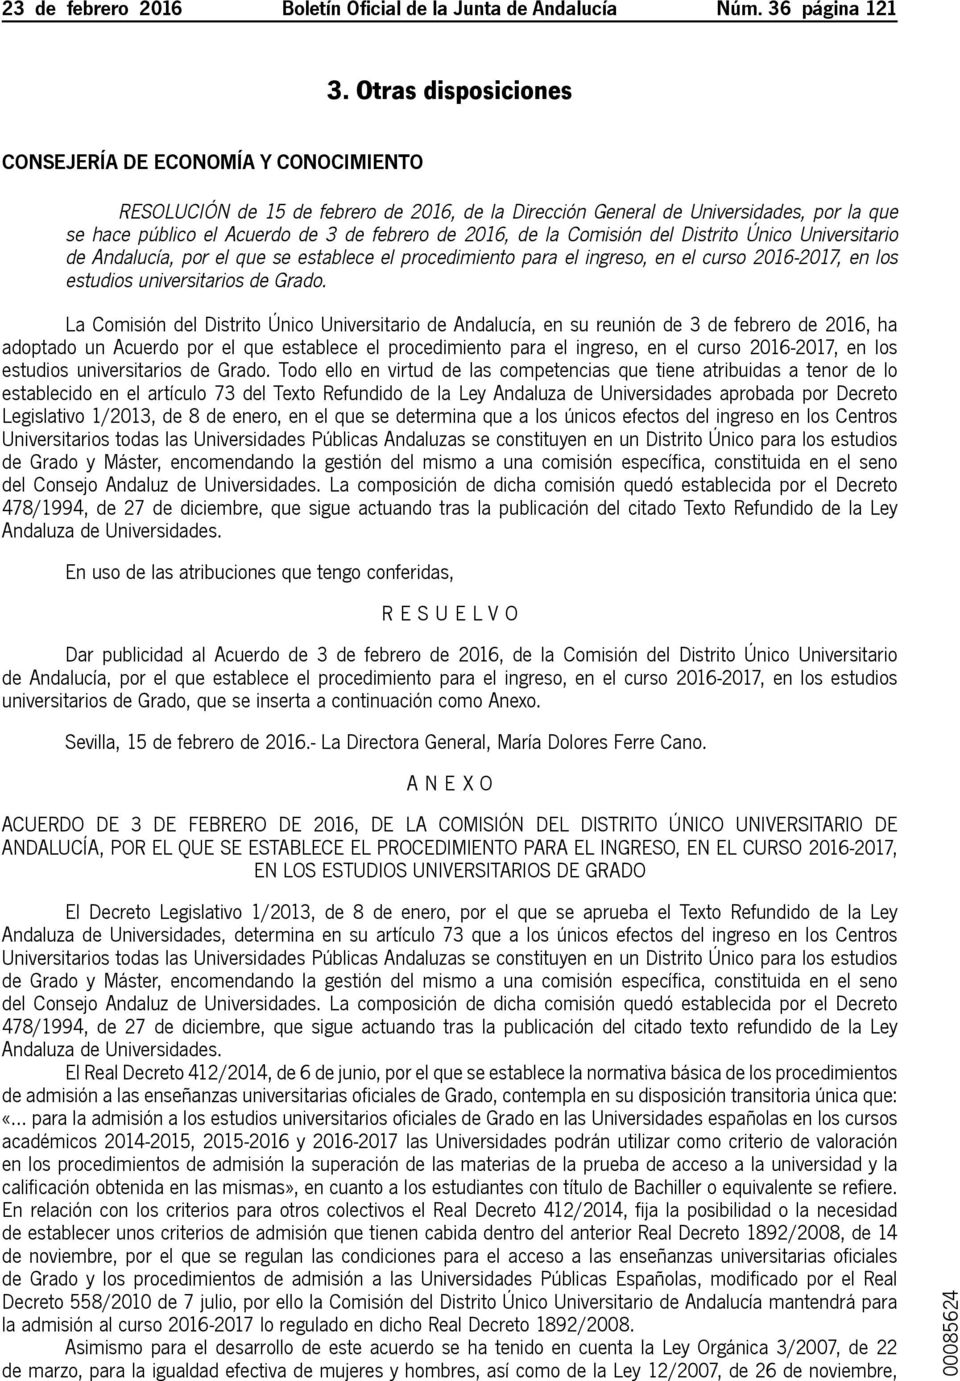 de la Comisión del Distrito Único Universitario de Andalucía, por el que se establece el procedimiento para el ingreso, en el curso 2016-2017, en los estudios universitarios de Grado.